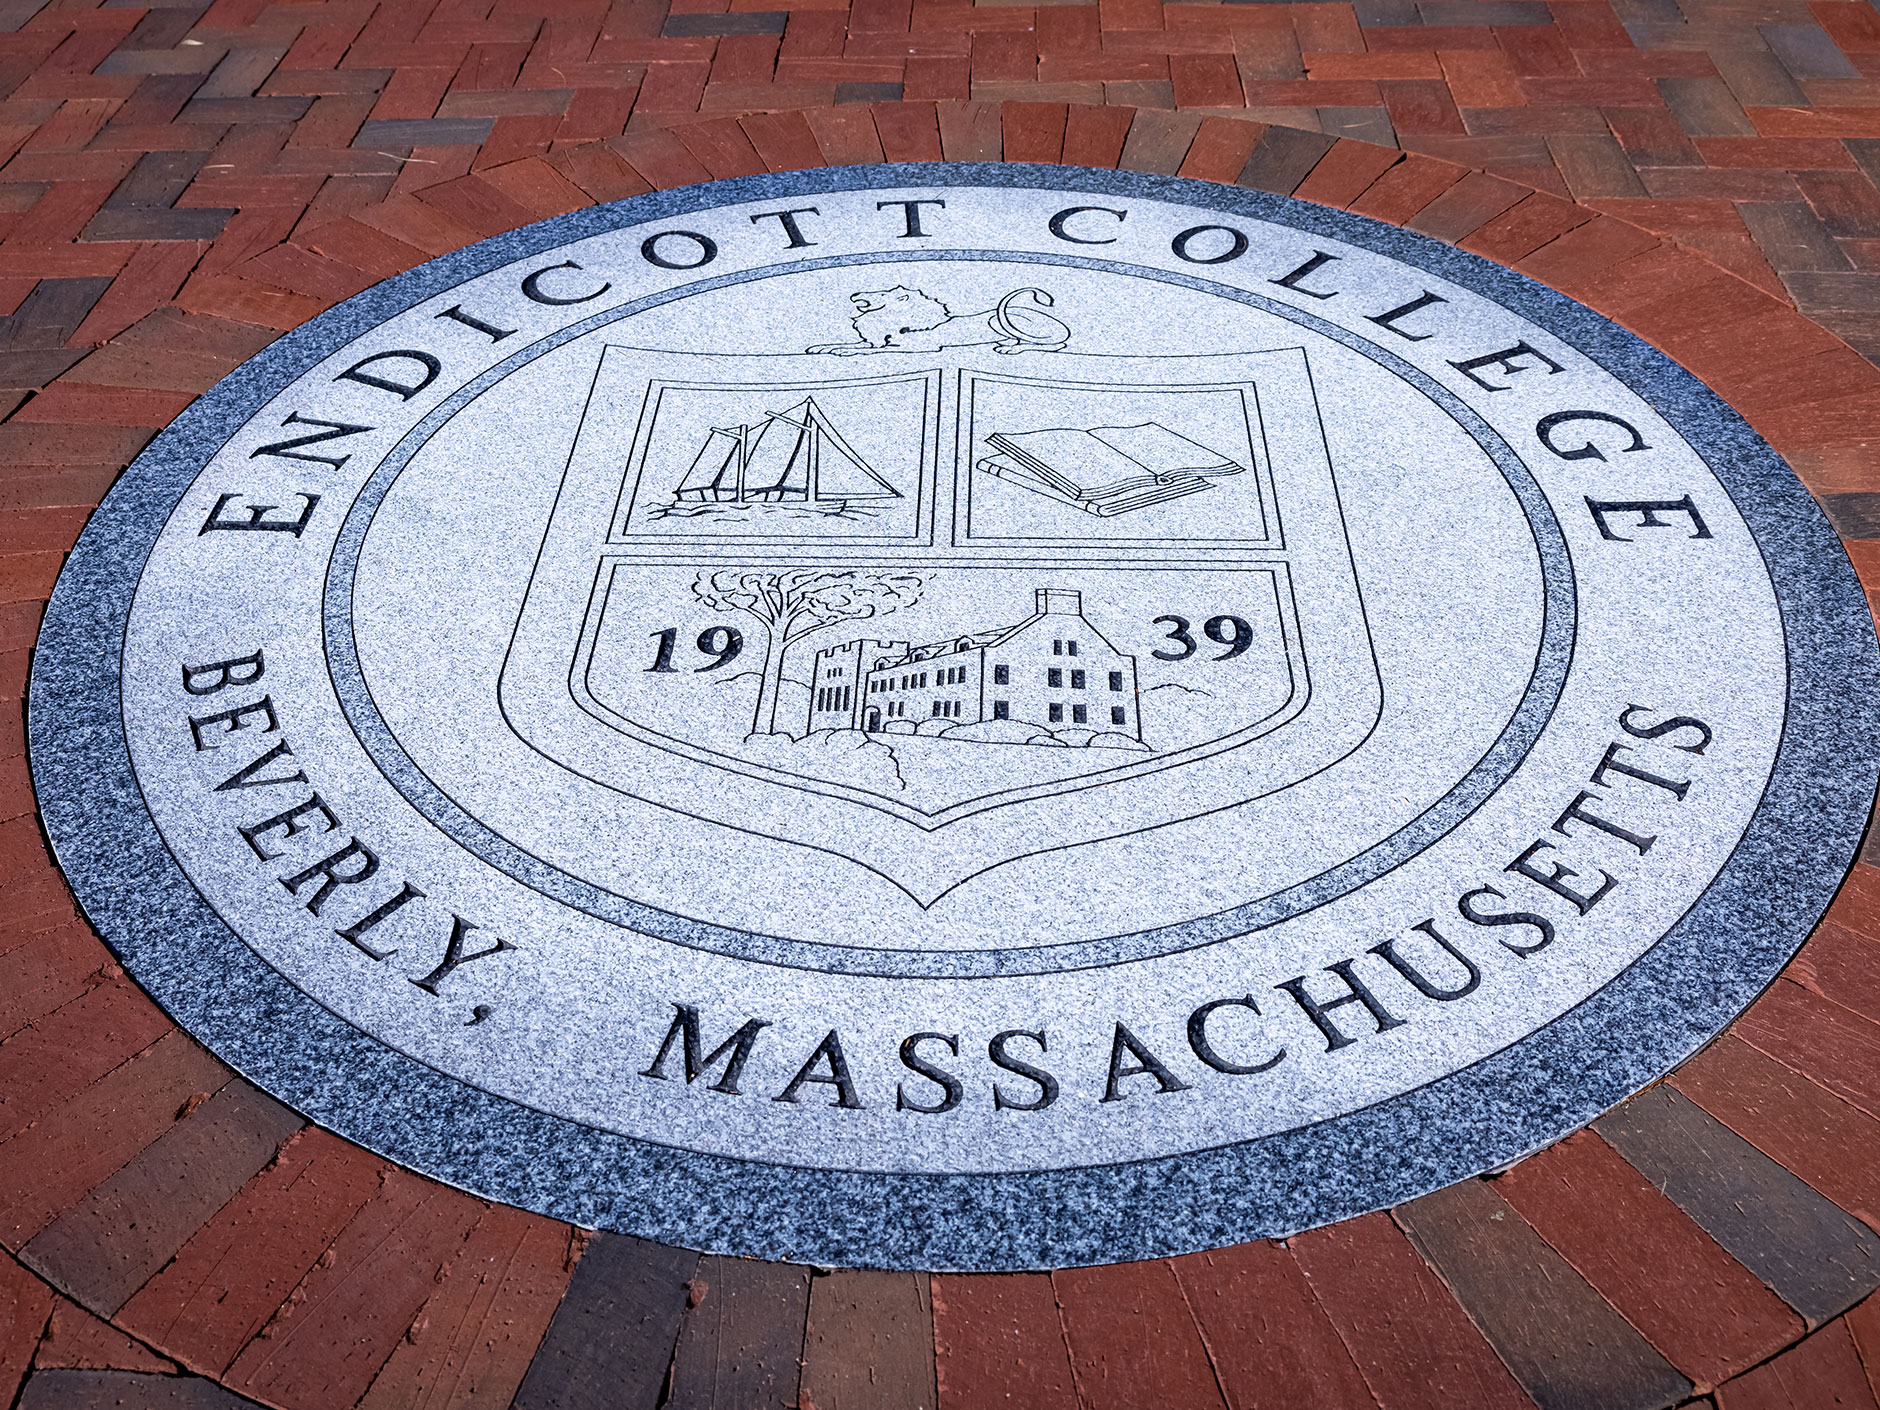 Endicott College seal